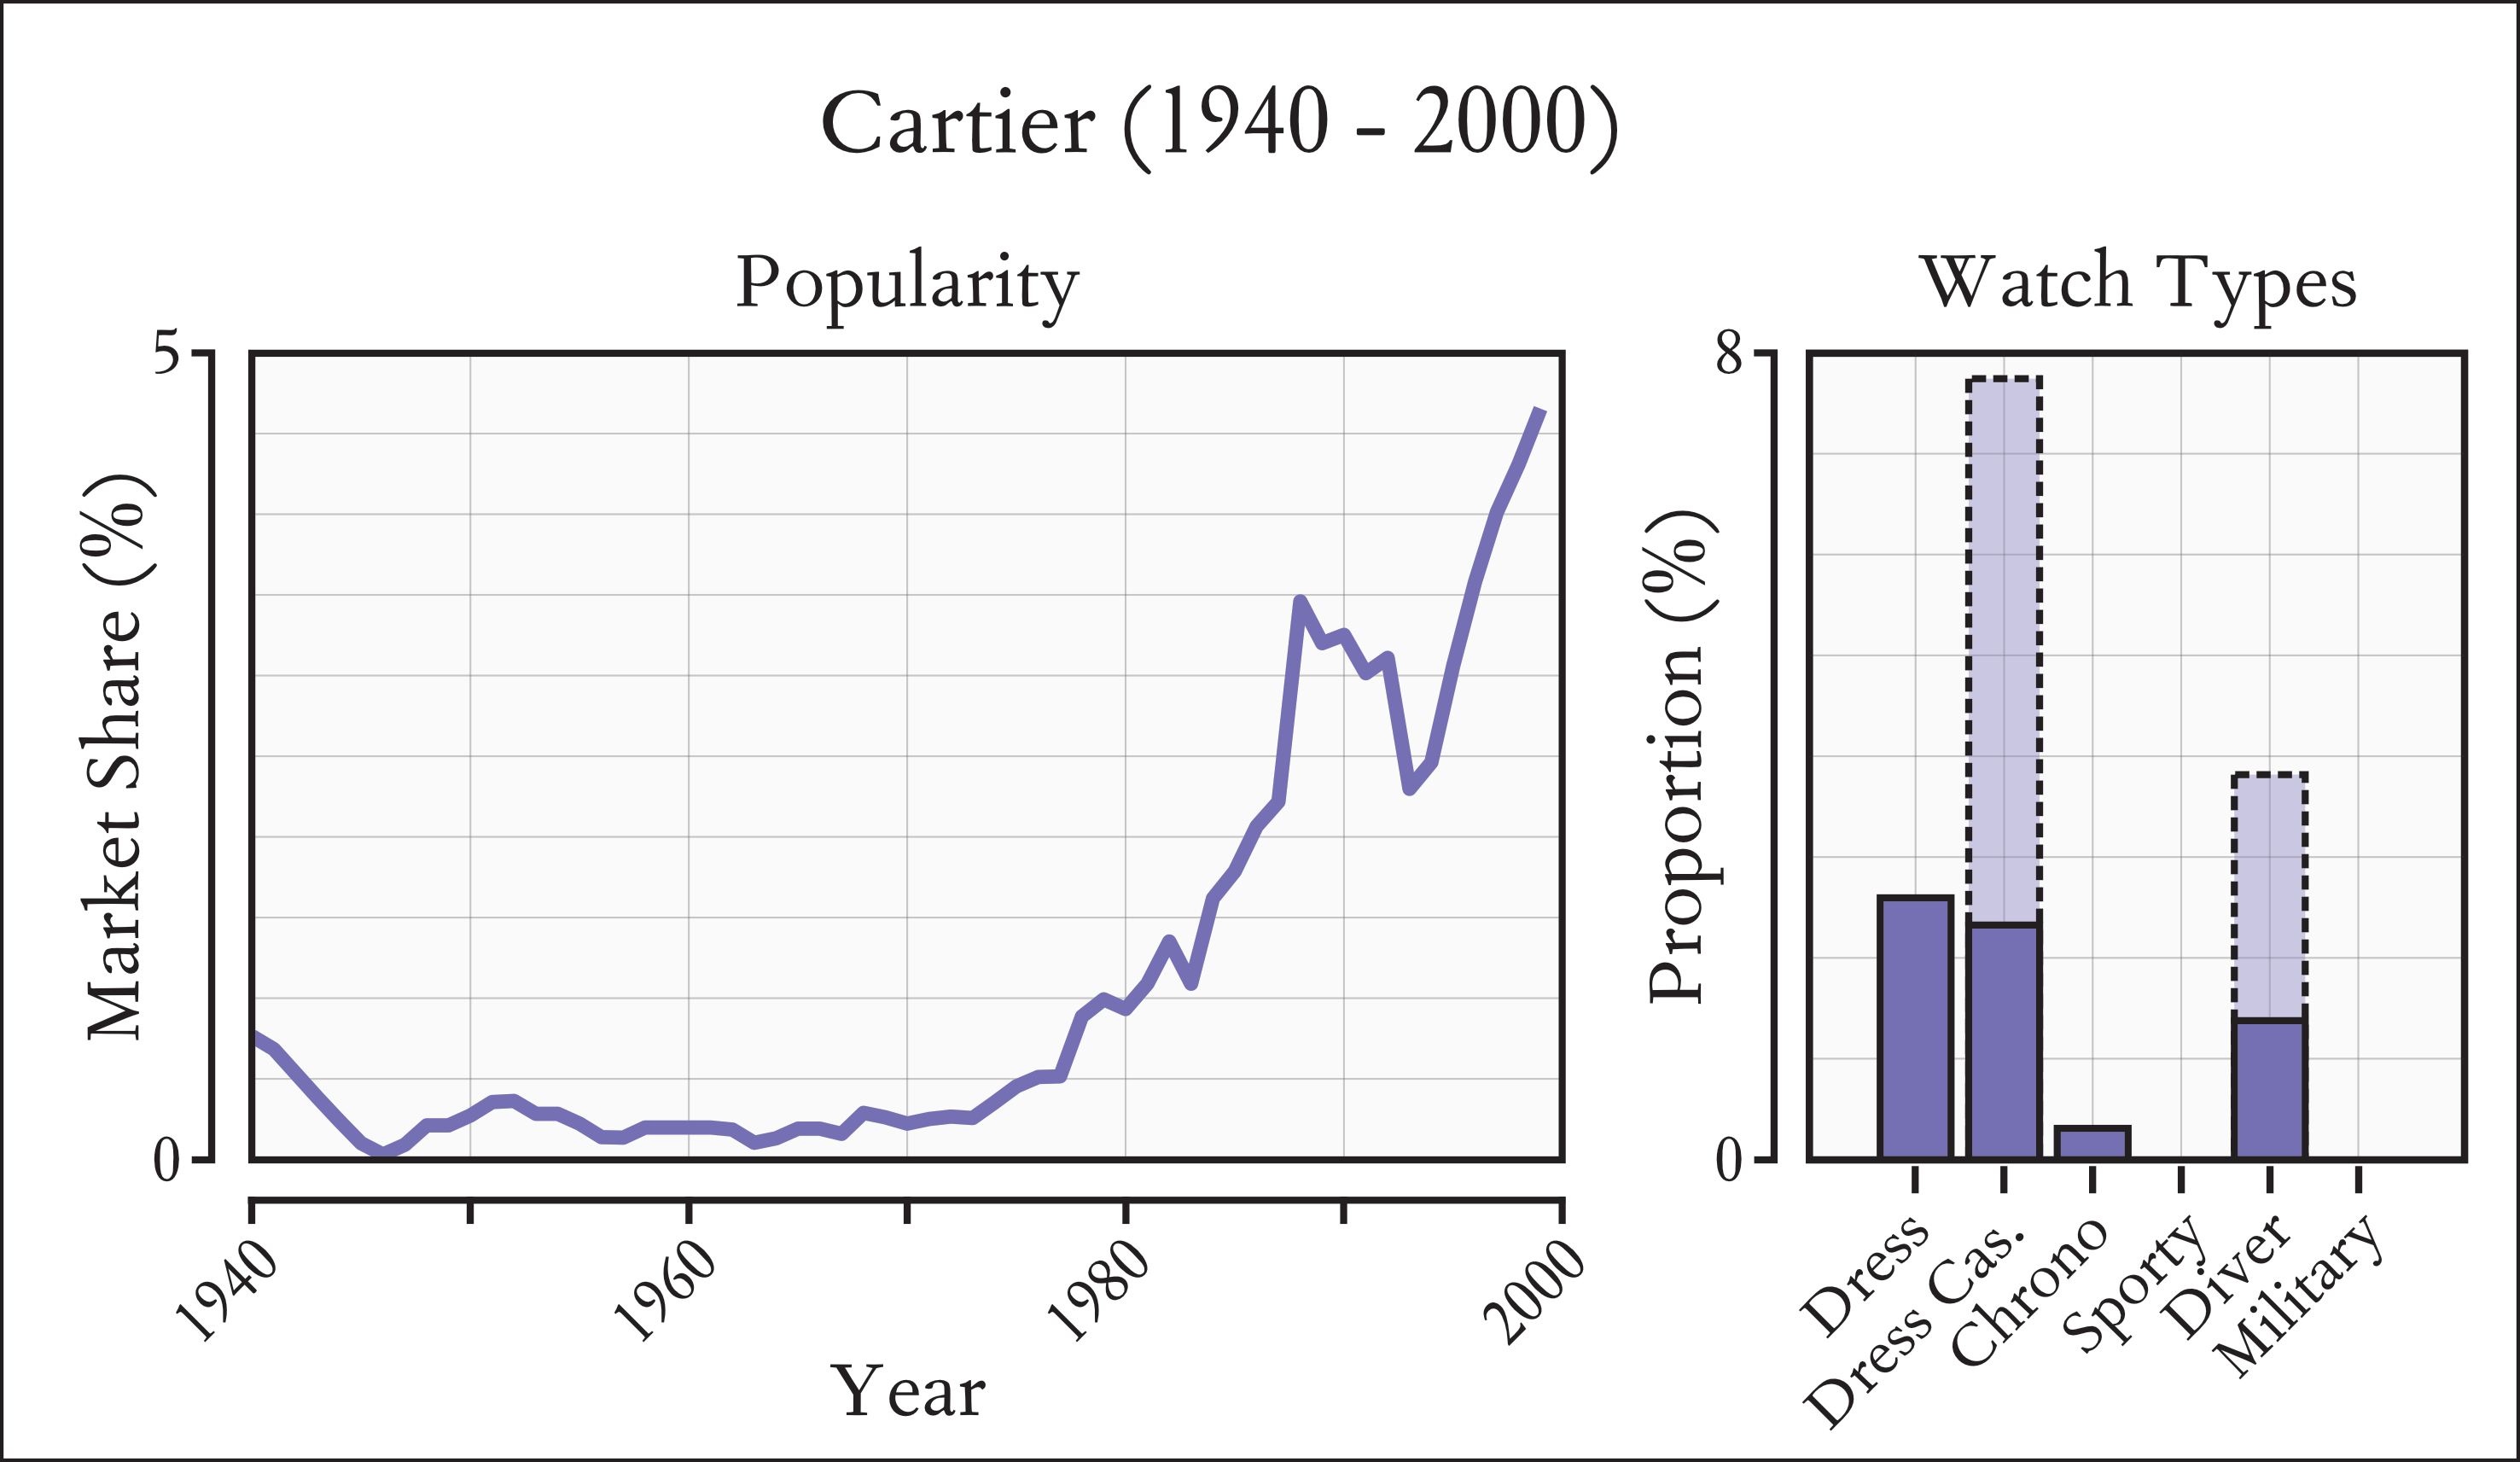 Distribution of Cartier popularity between 1940-2000